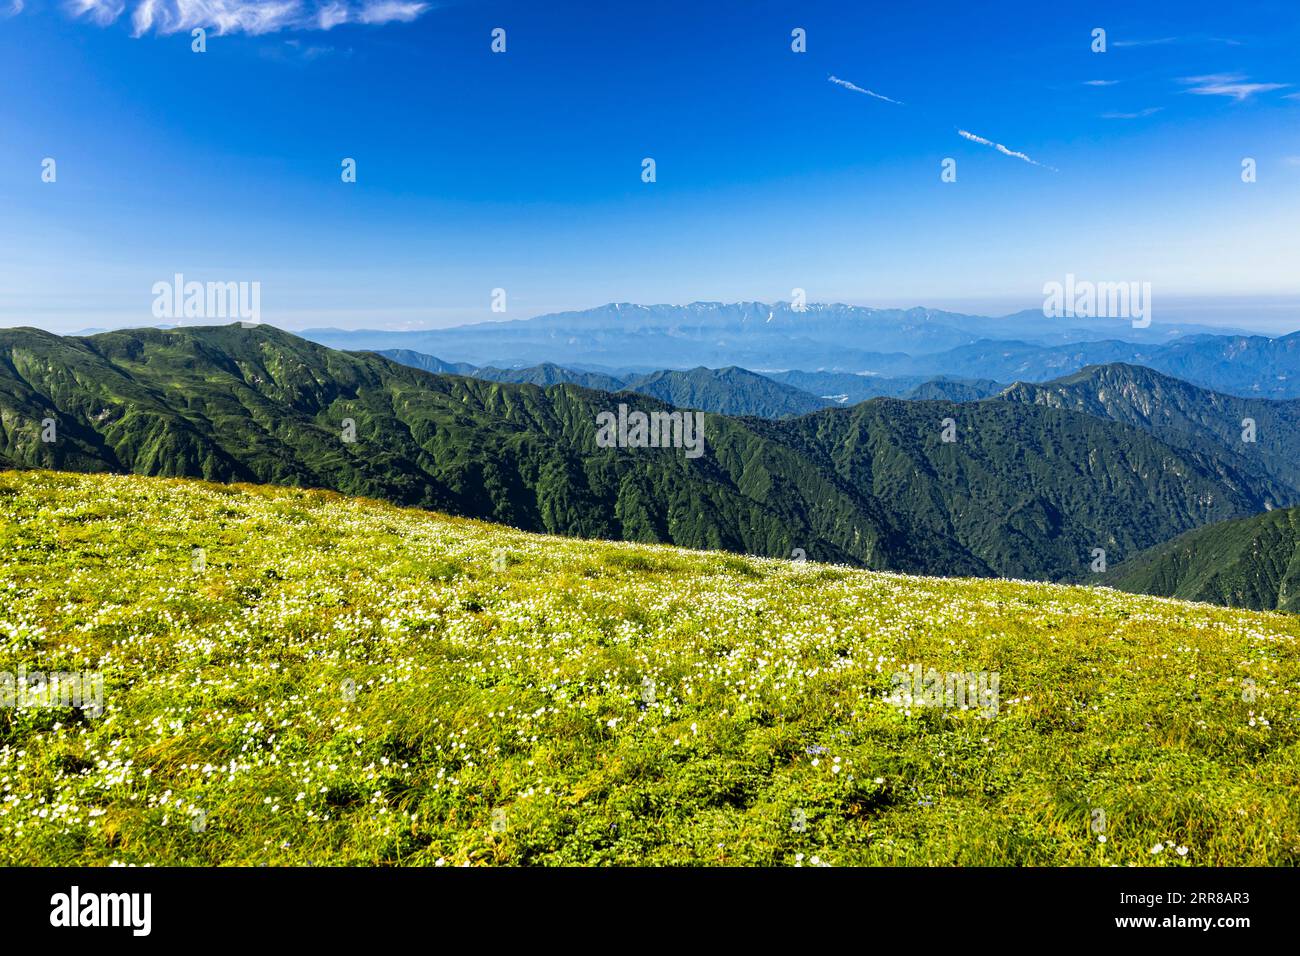 Asahi Mountain Range trekking, vue lointaine de la chaîne de montagnes Iide, jardin de fleurs alpines, 100 montagnes du Japon, Yamagata, Tohoku, Japon, Asie Banque D'Images